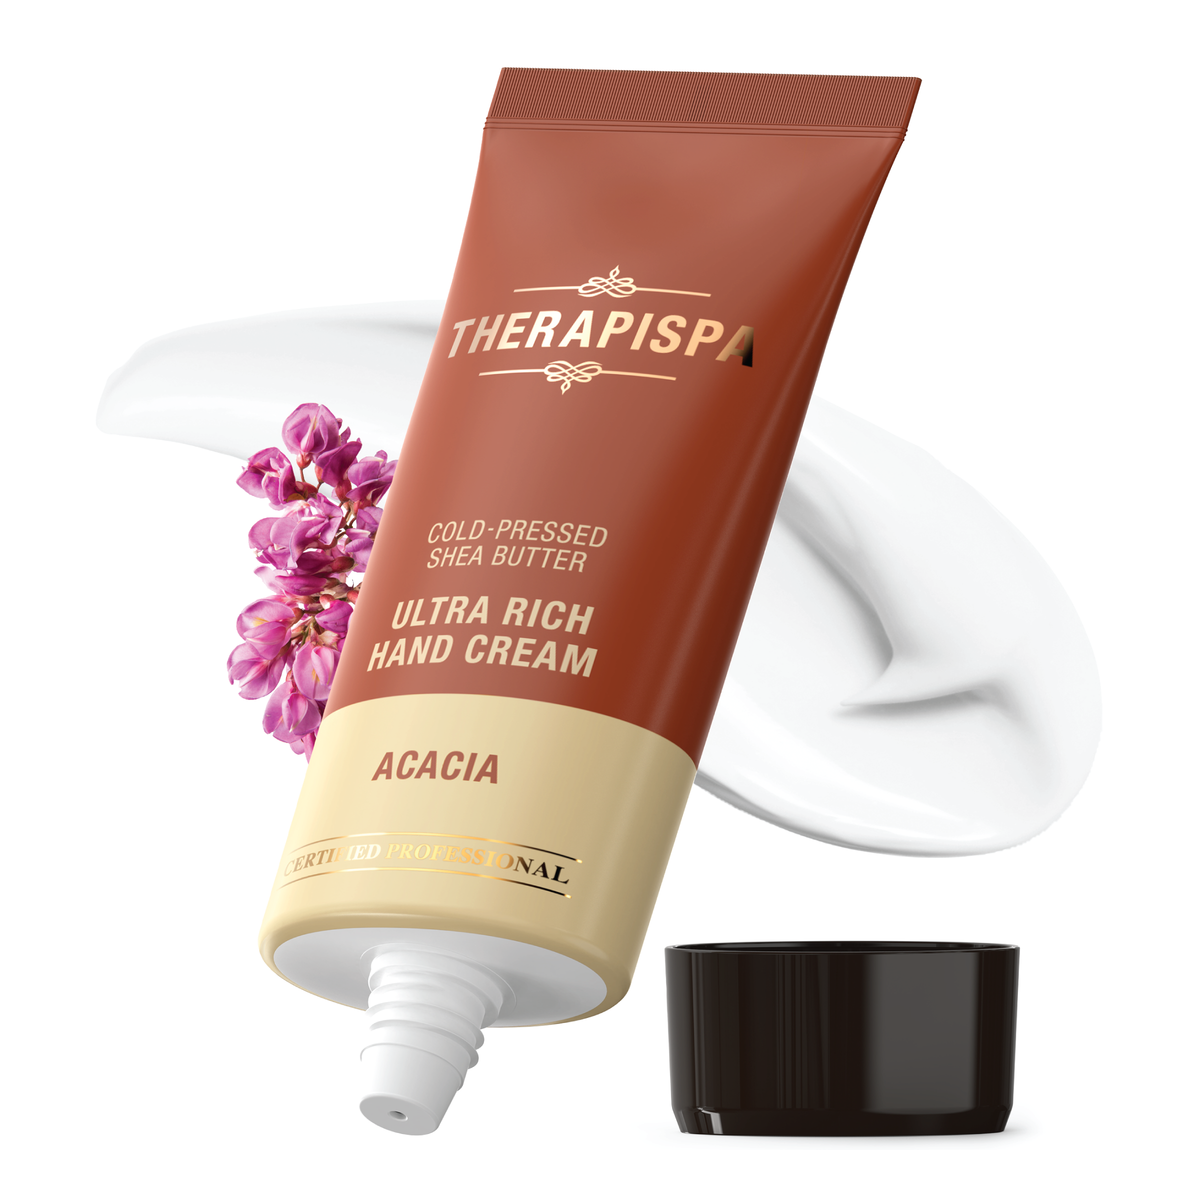 Ultra Rich Hand Cream / Acacia